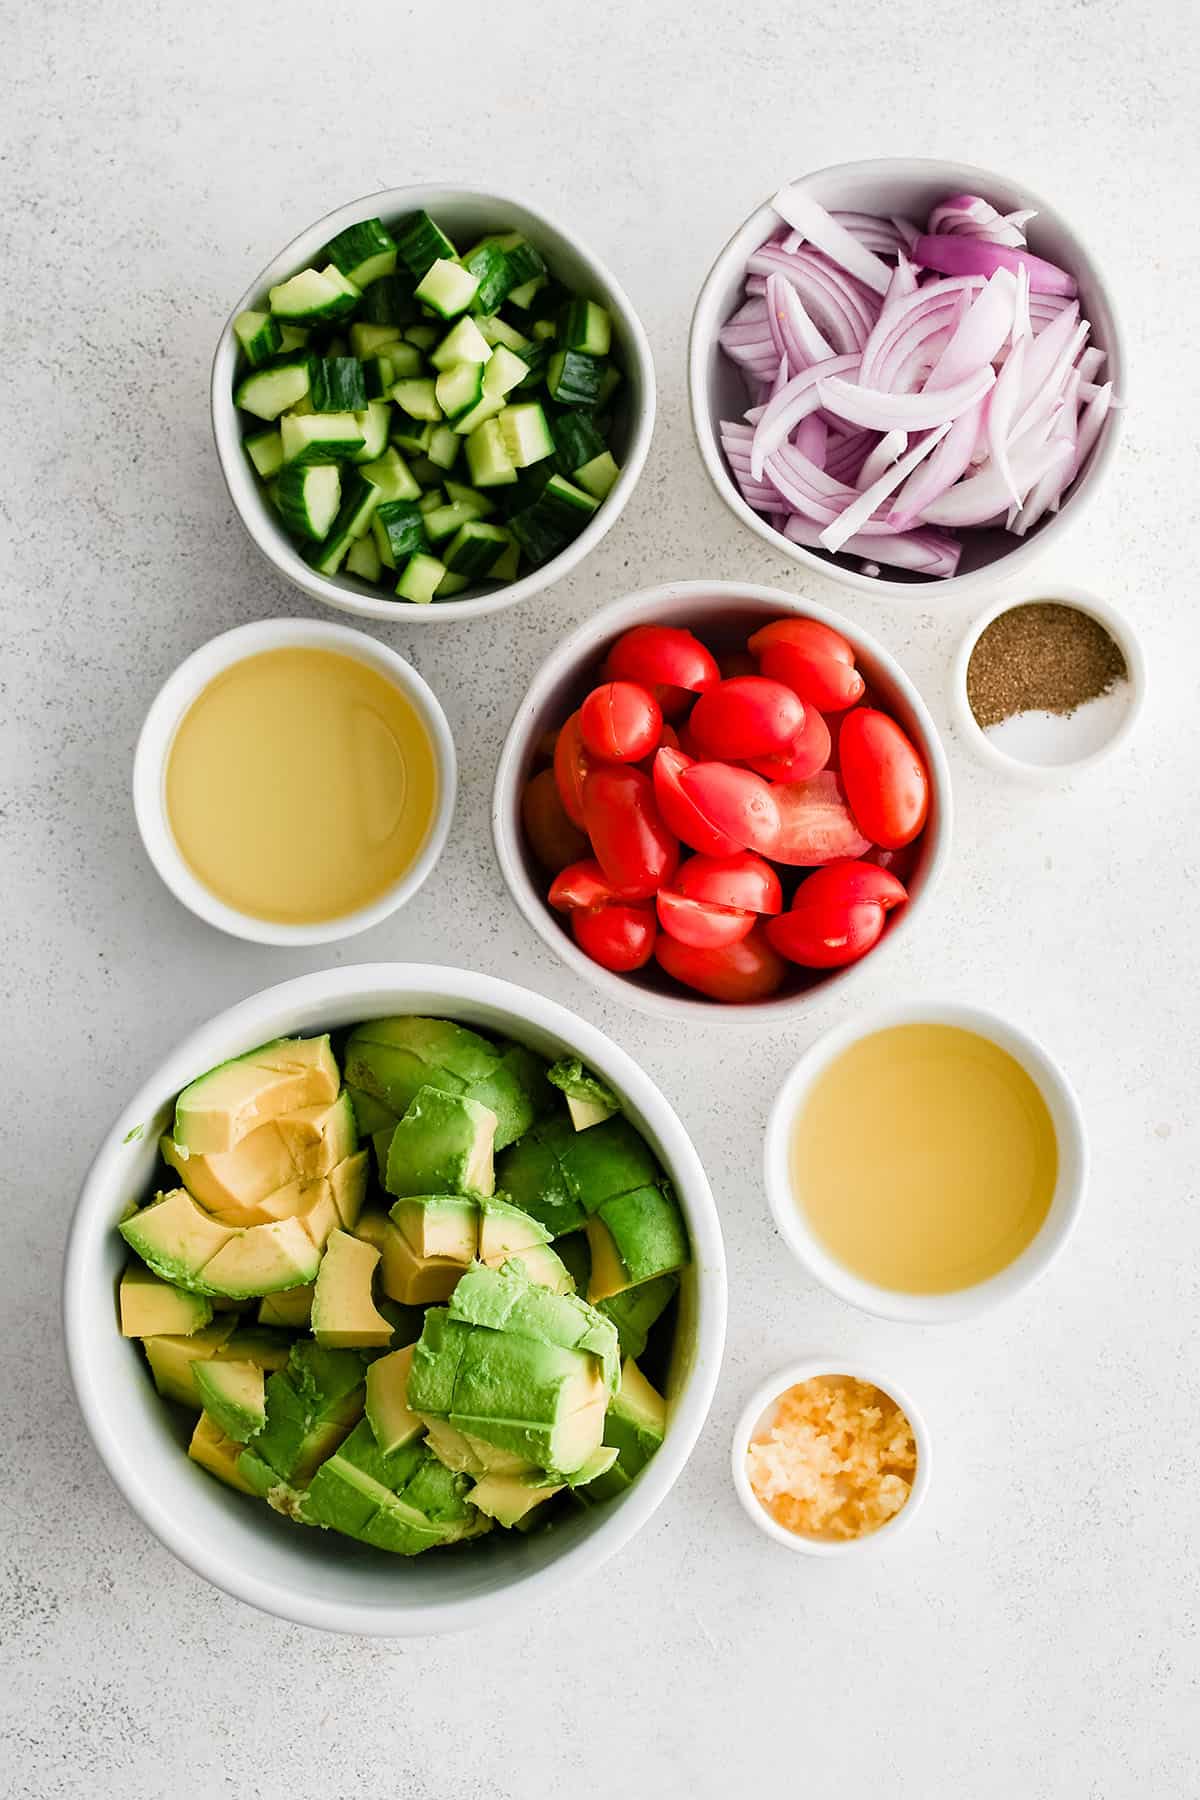 ingredients to make avocado salad